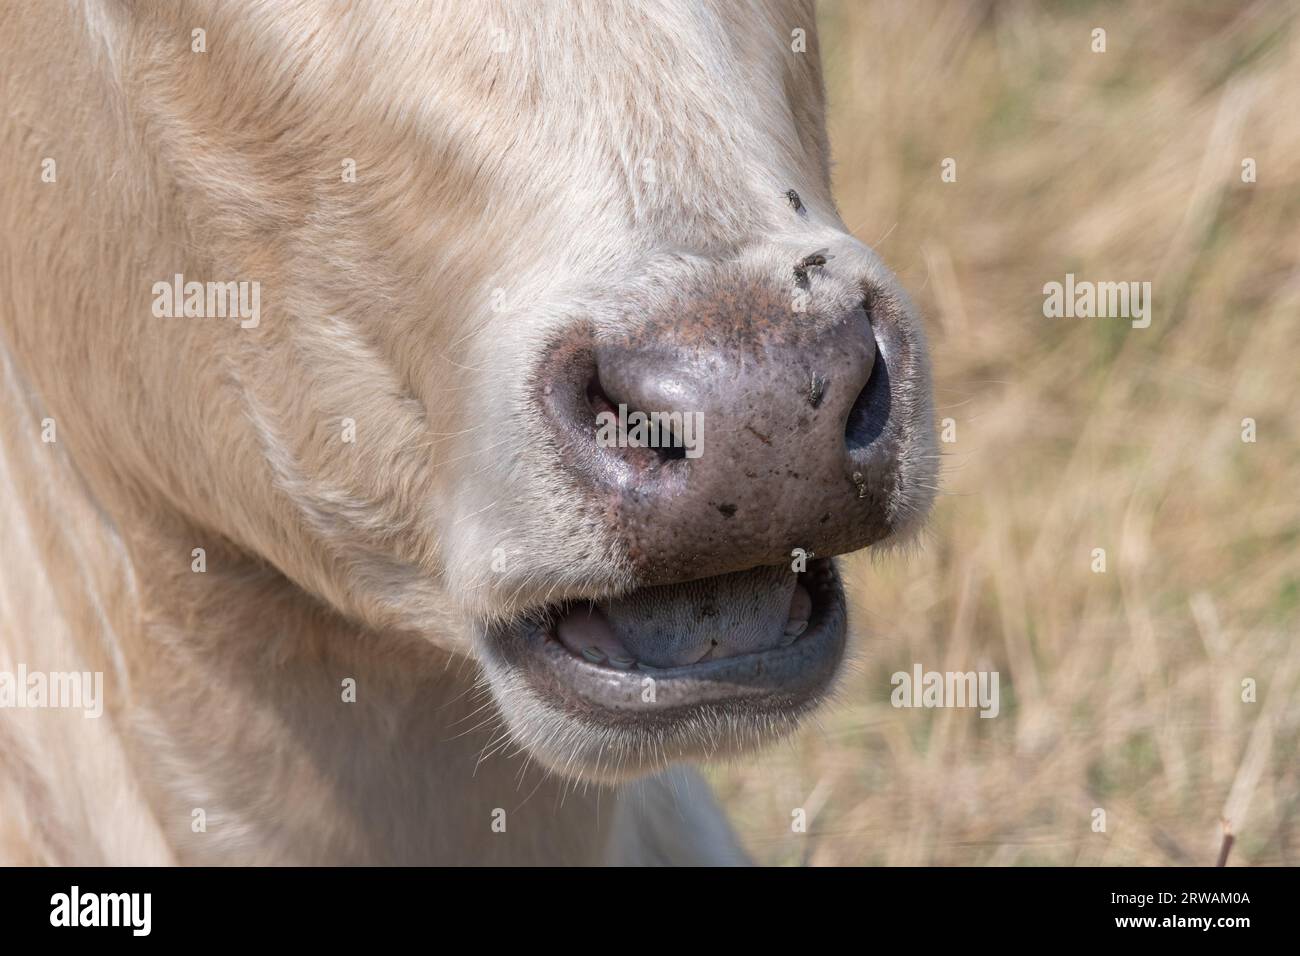 Primo piano di una mucca che masticava il cud, comportamento degli animali ruminanti Foto Stock